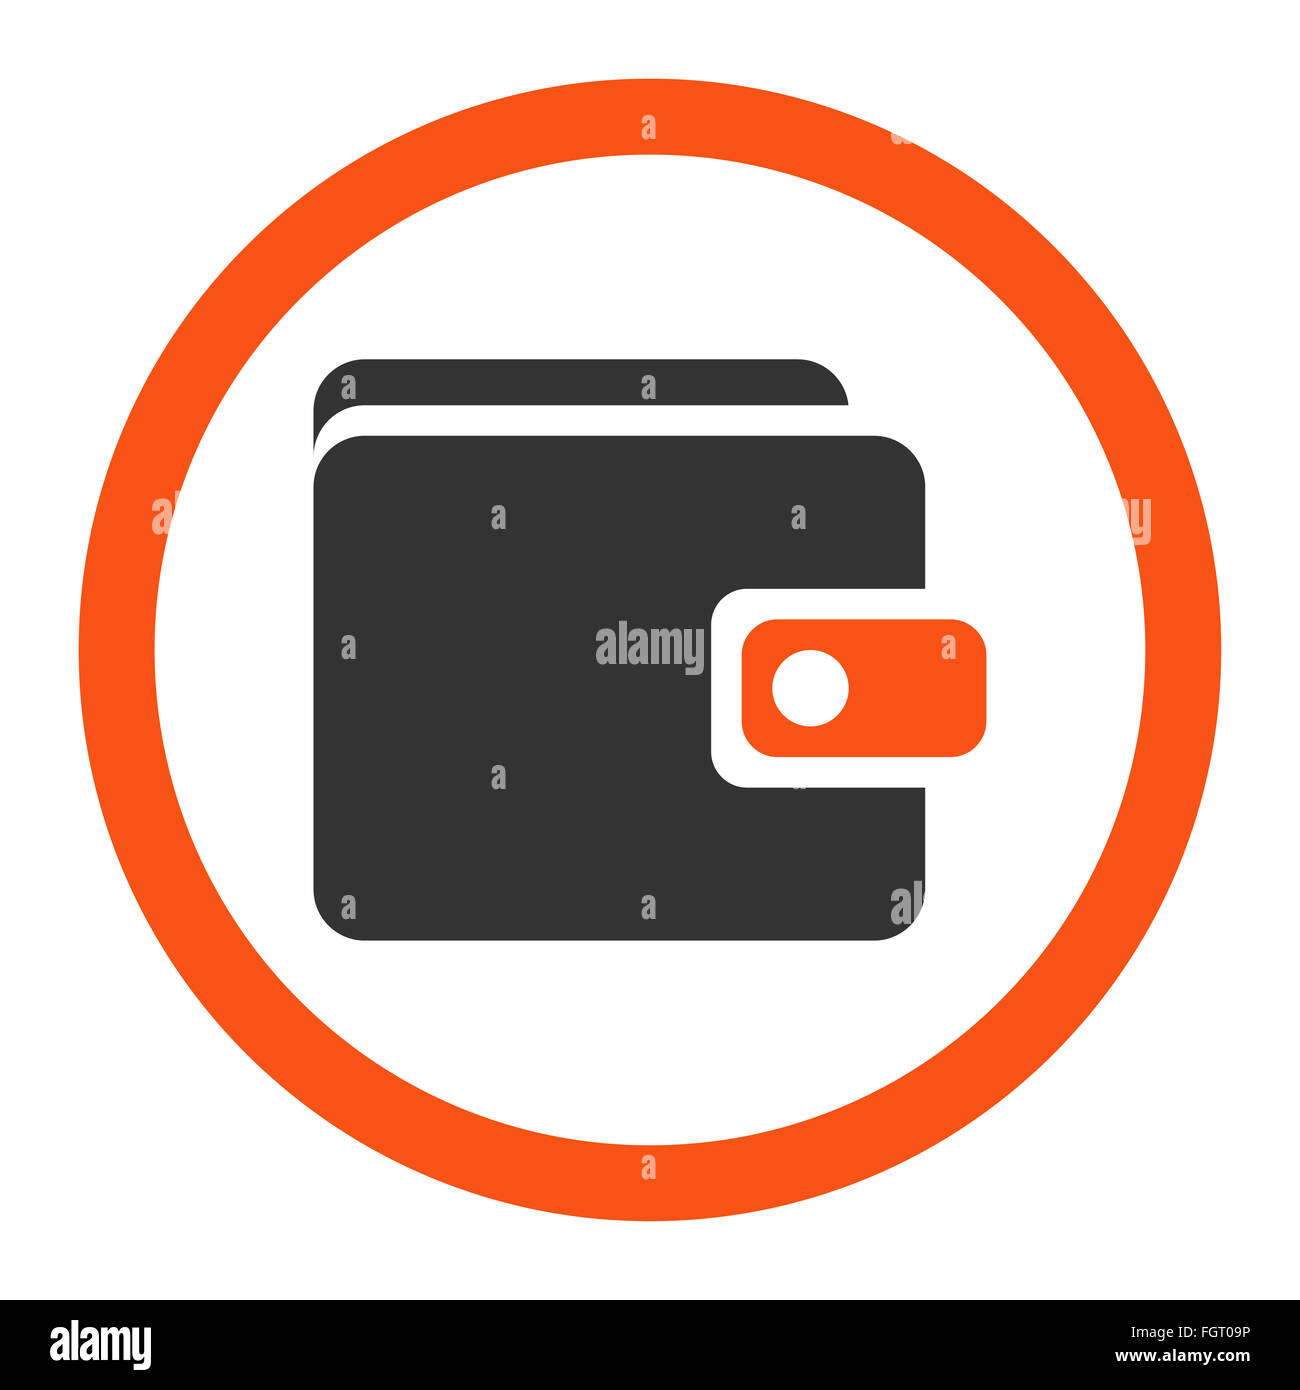 Wallet icon Stock Photo